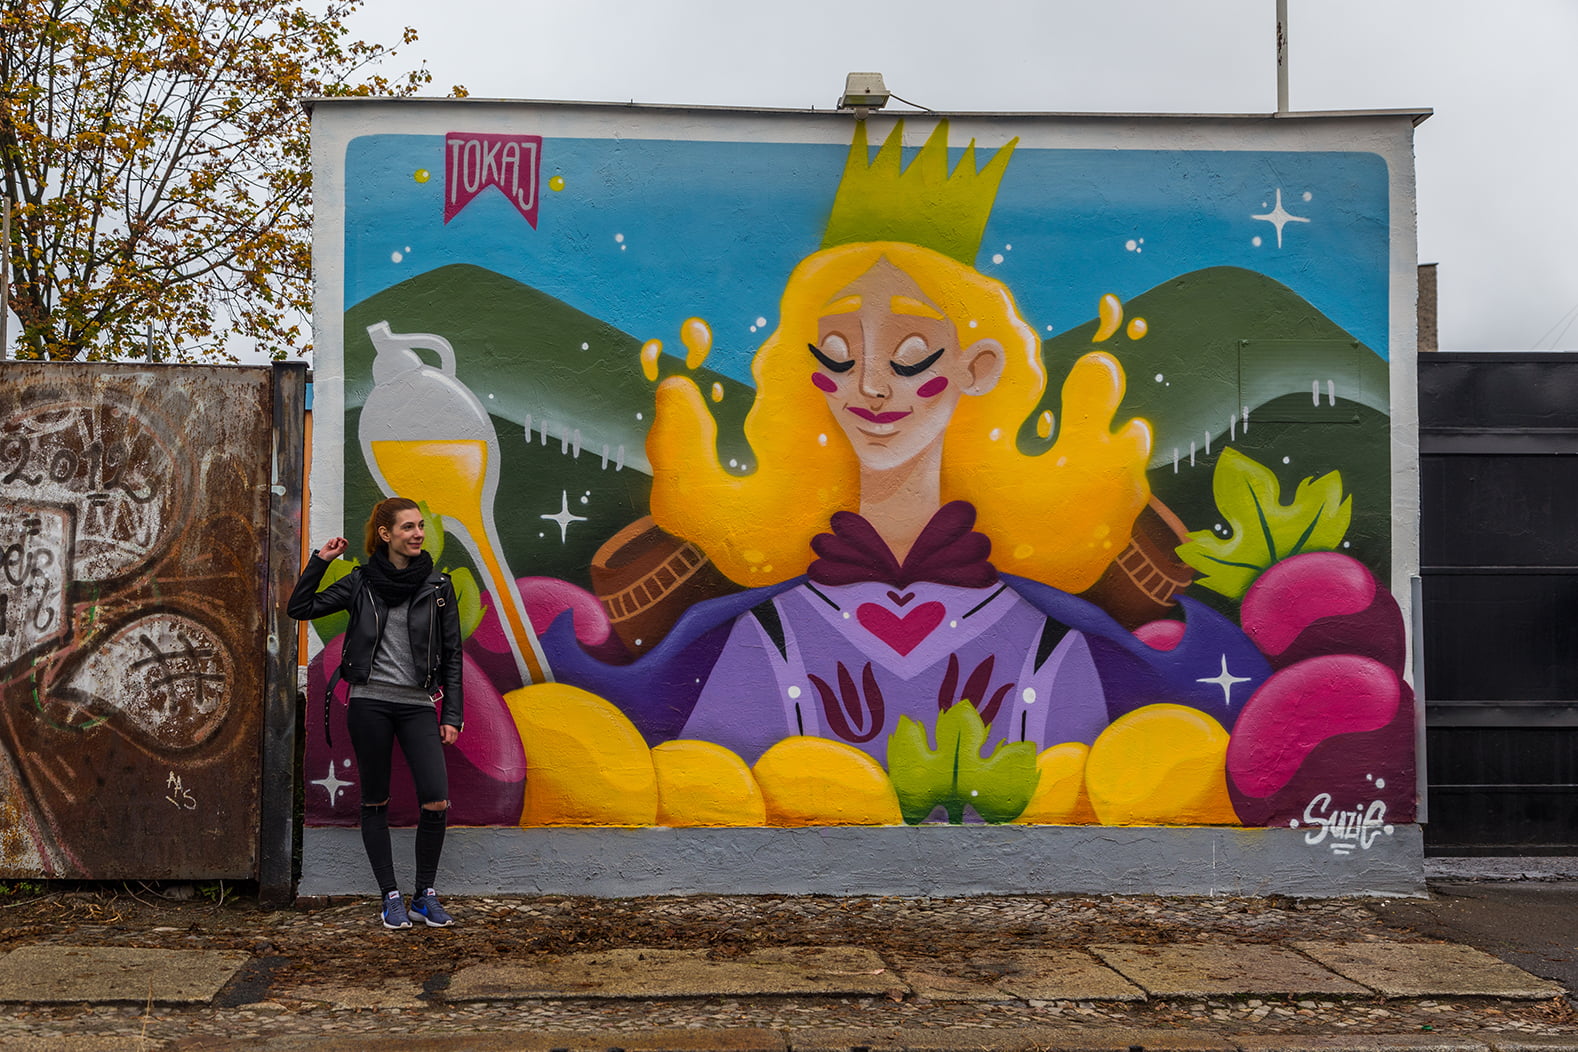 Interjú Suzie graffiti művésszel